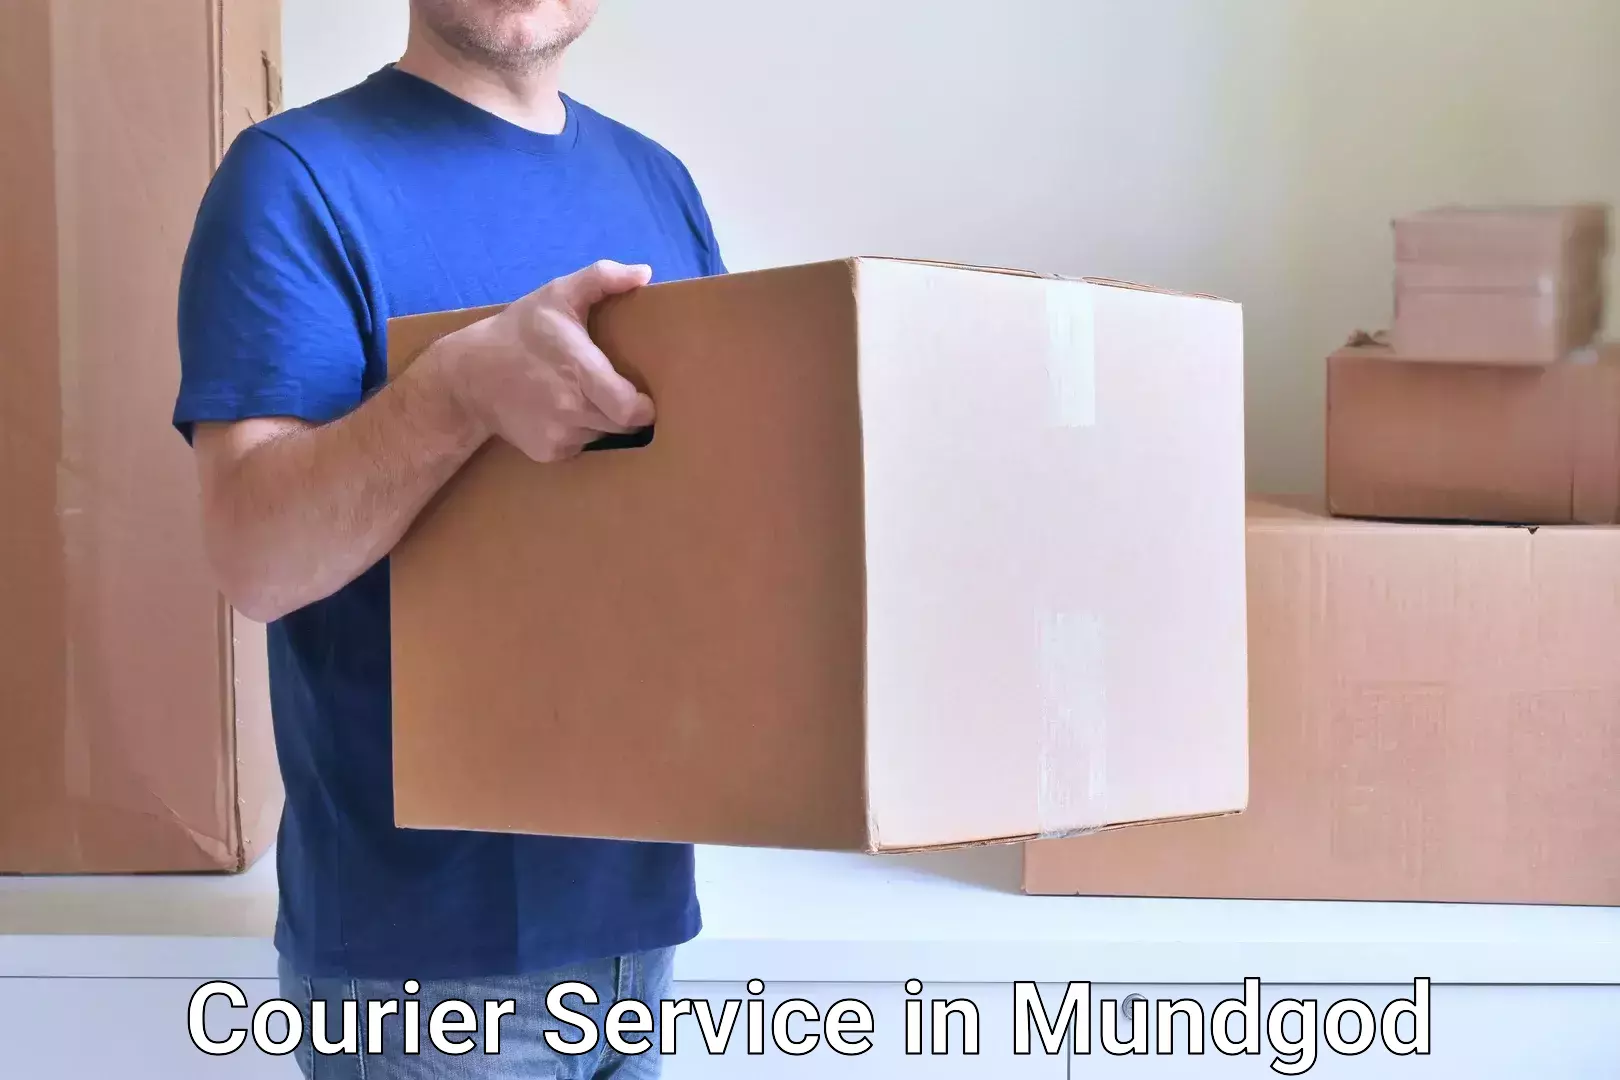 Flexible parcel services in Mundgod